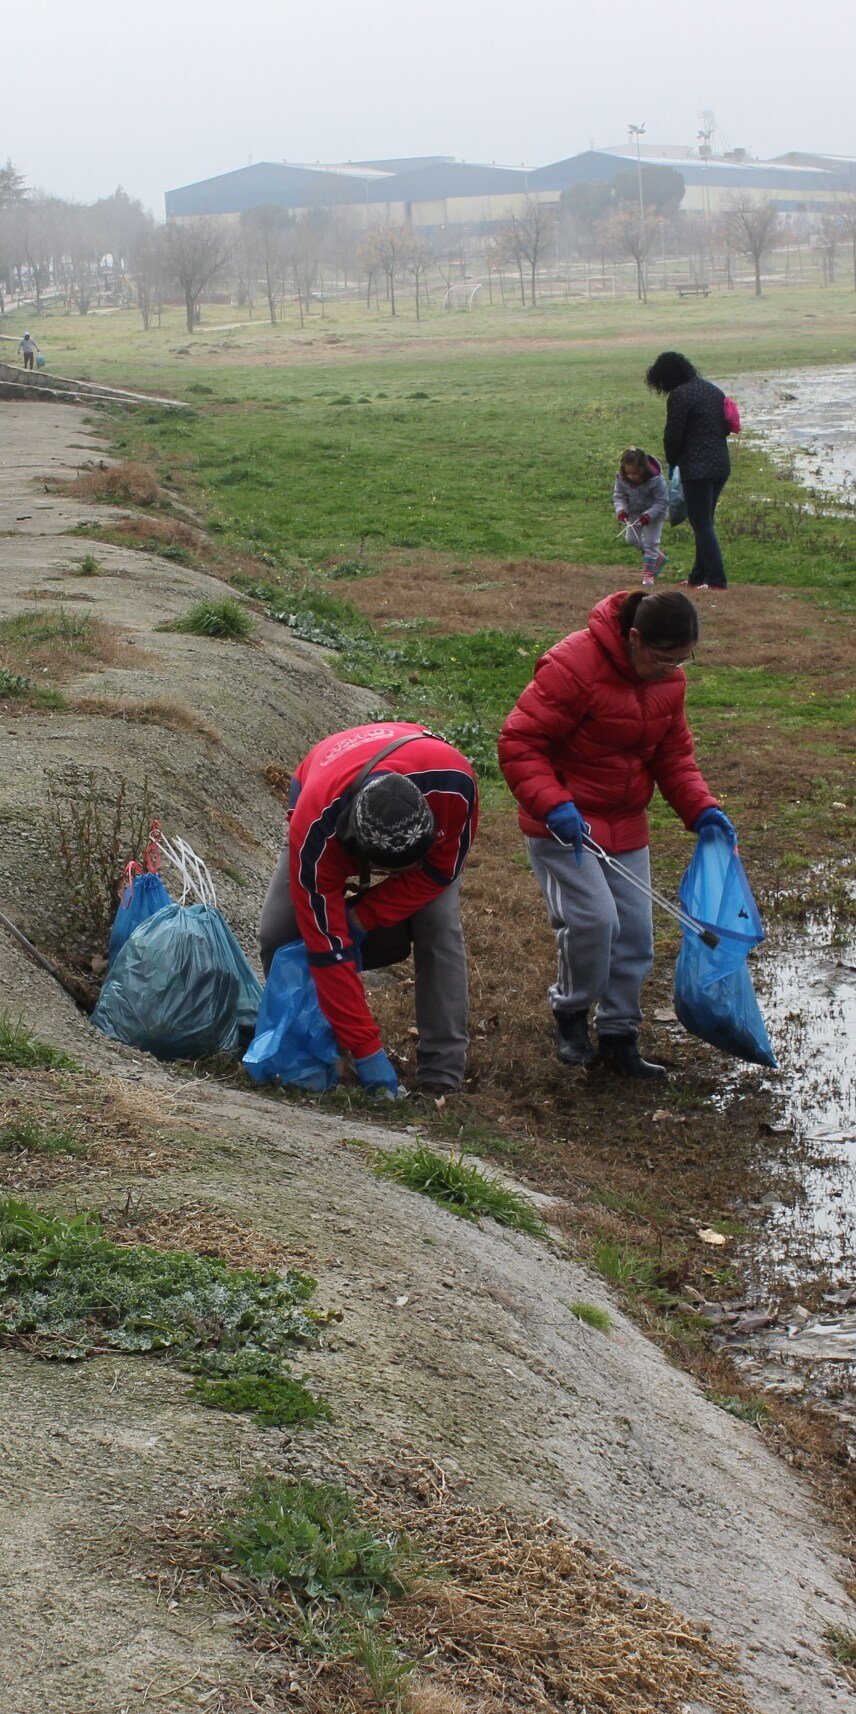 Imagen secundaria 2 - Una decena de voluntarios limpian de plásticos y vidrio el entorno de La Charca